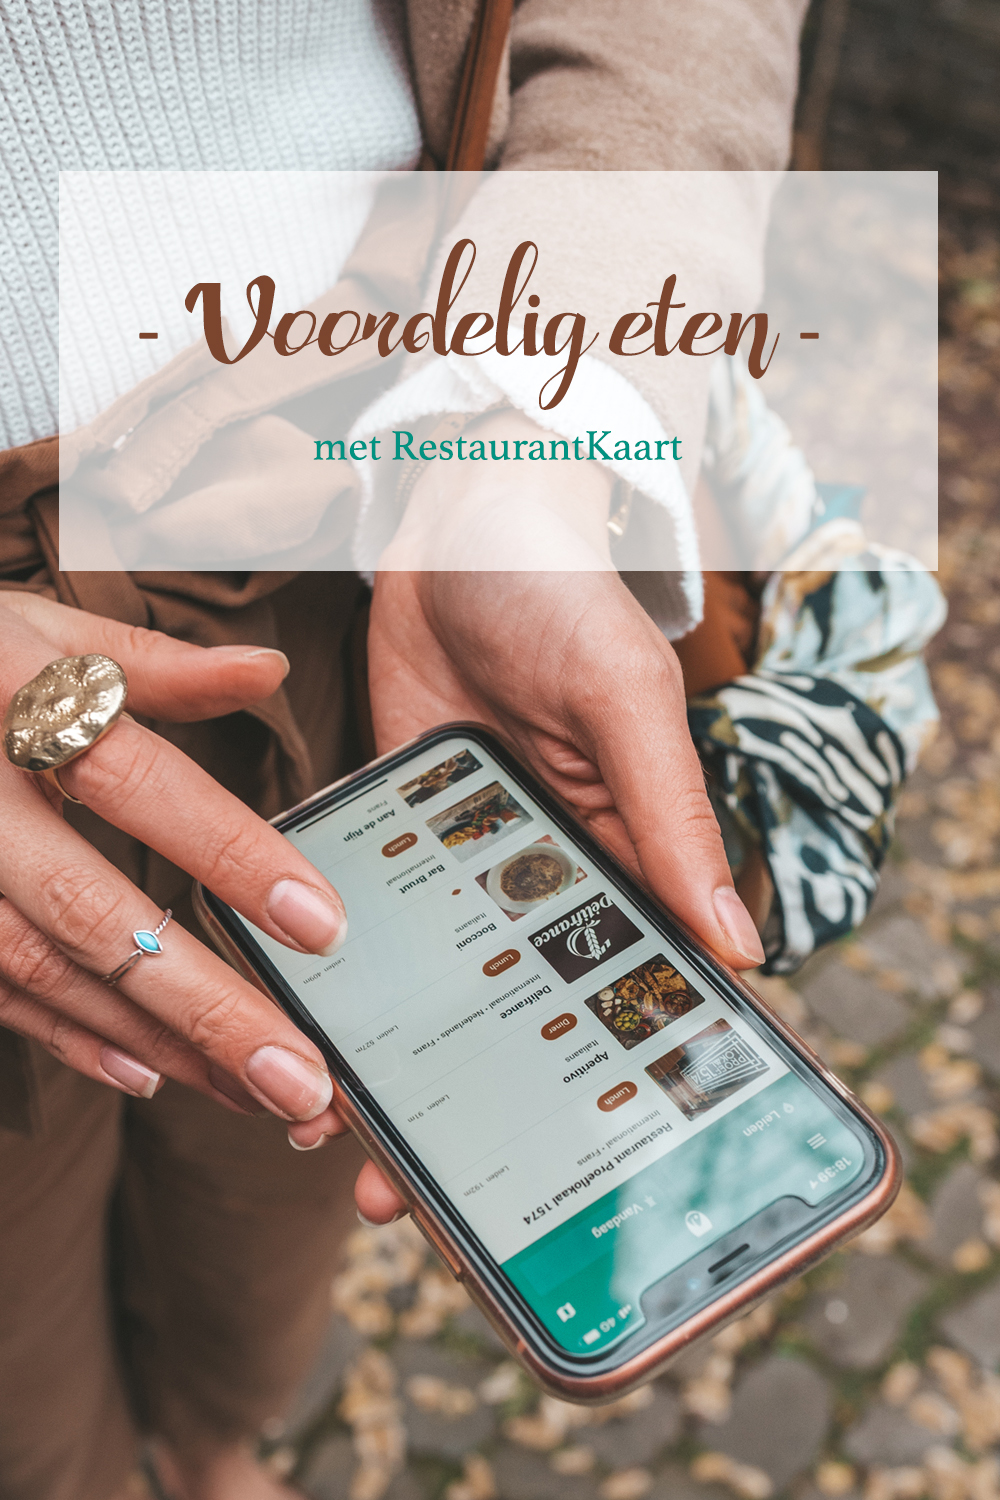 Voordelig uit eten met RestaurantKaart Leiden vegan